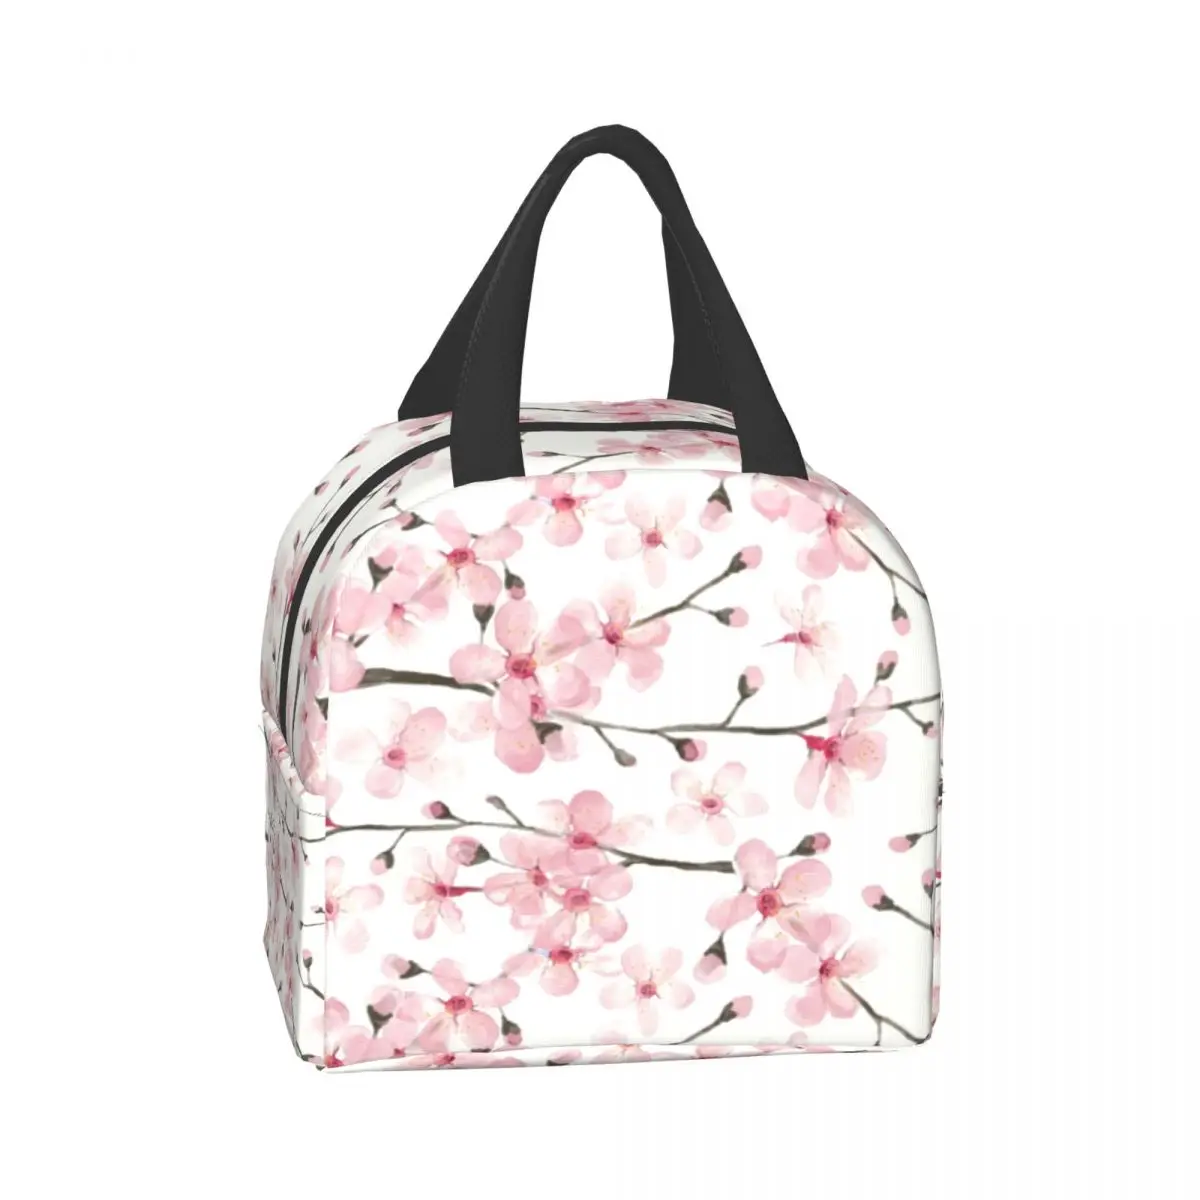 Японская вишневая изолированная сумка для ланча с цветочным рисунком, Многоразовый холодильник, термос для еды, Ланч-бокс для работы, учебы и путешествий Изображение 2